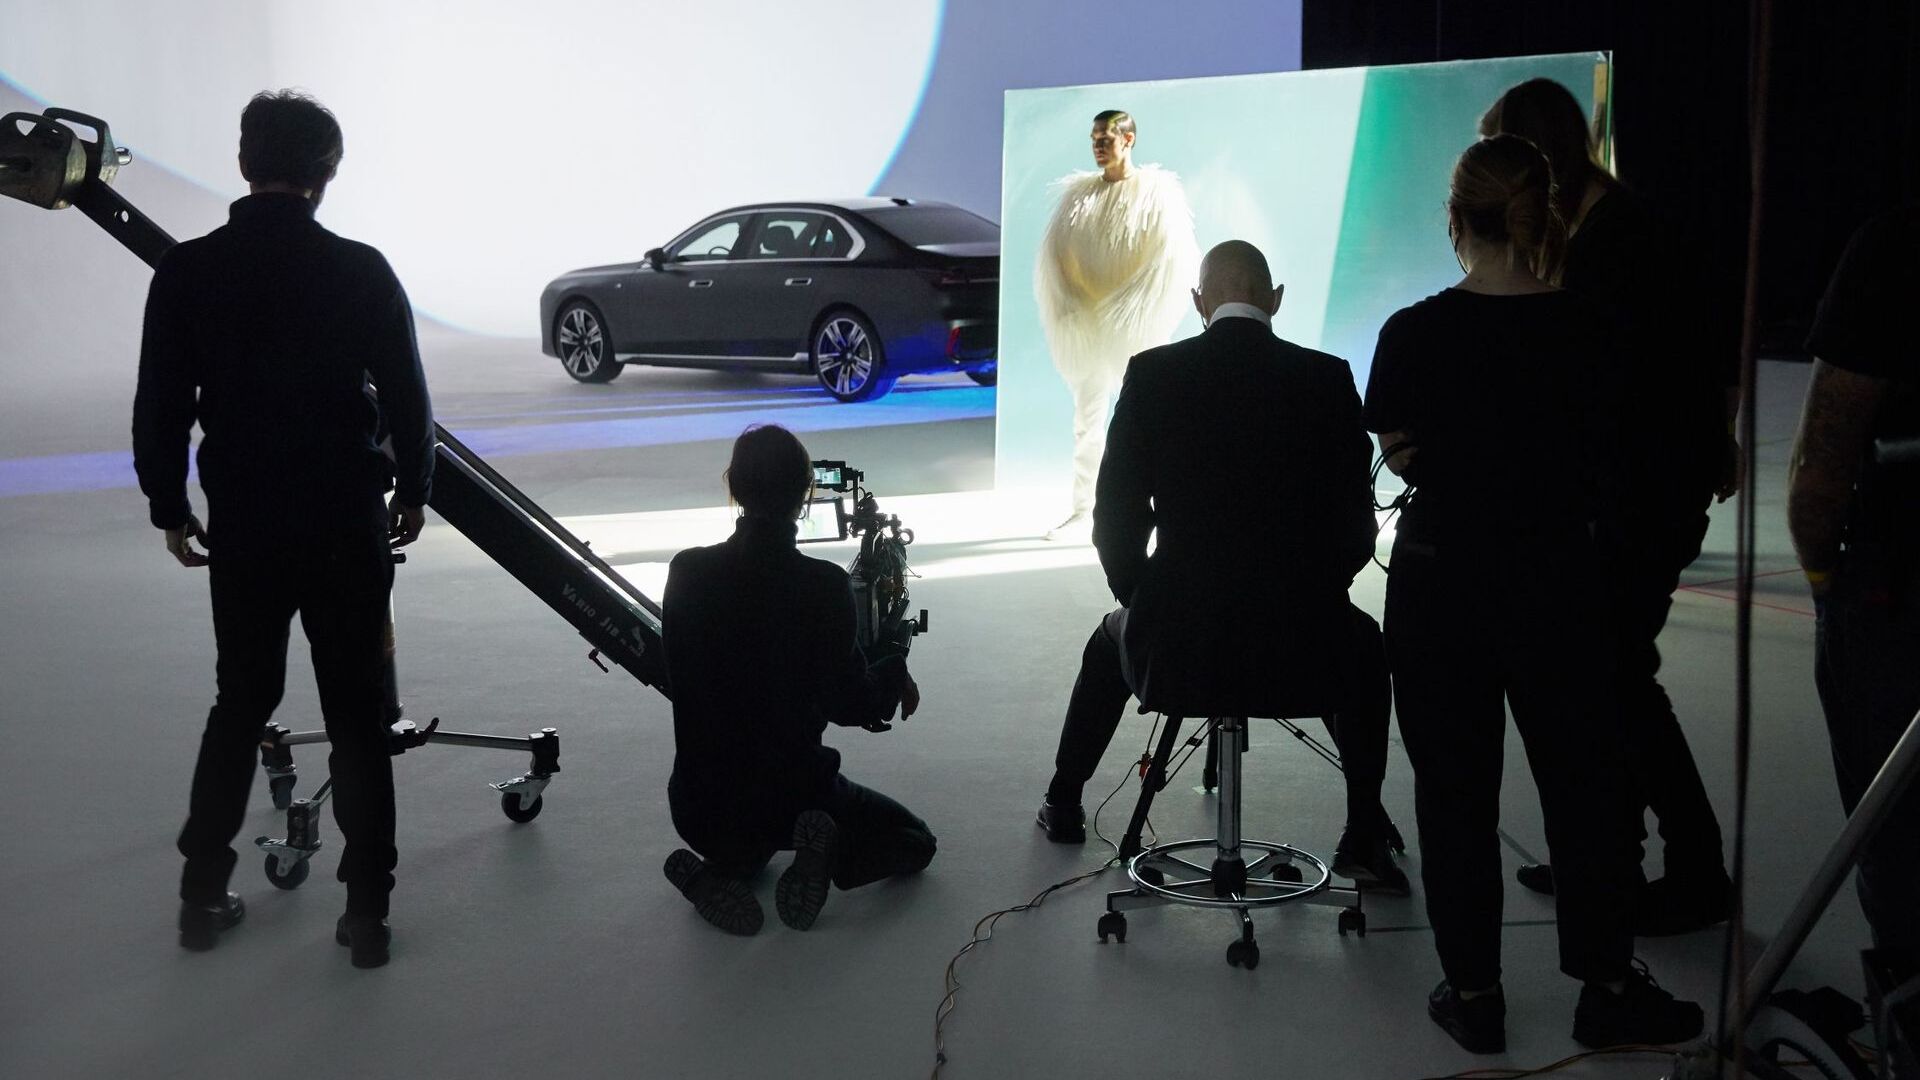 BMW i7 ได้รับการตีความใหม่โดย Nick Knight ช่างภาพแฟชั่นชาวอังกฤษตามเกณฑ์ของ Forwardism